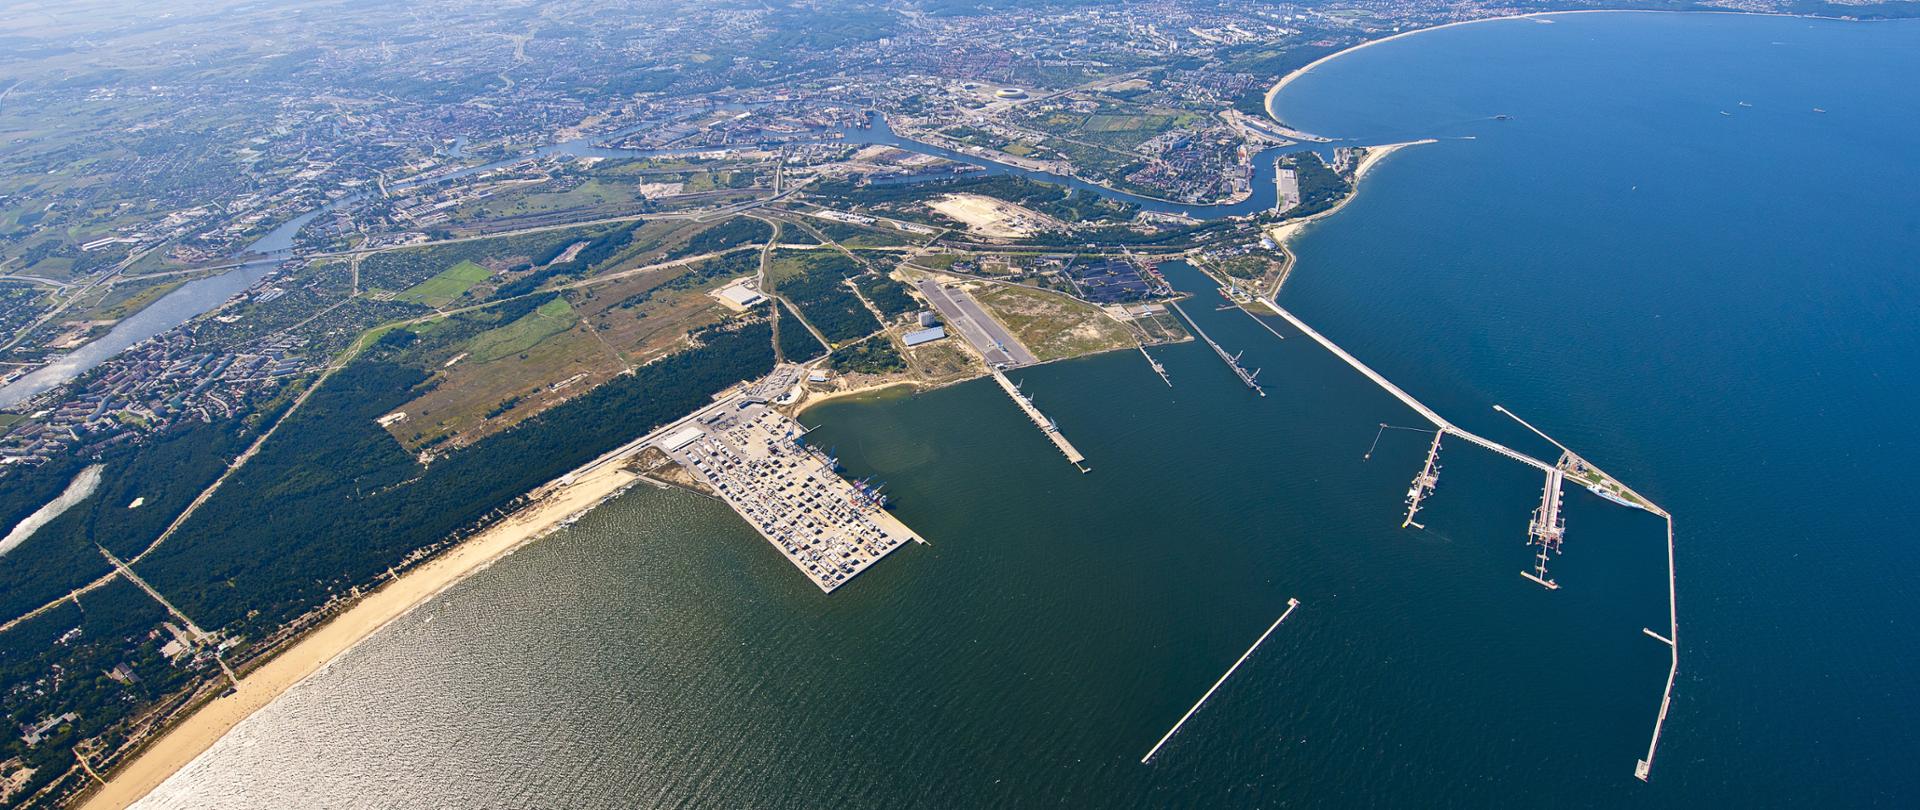 Na zdjęciu widać nabrzeże portowe w Gdańsku. Po prawej stronie można zauważyć Zatokę Gdańską, po lewej plażę wraz z portem. Pogoda jest słoneczna.